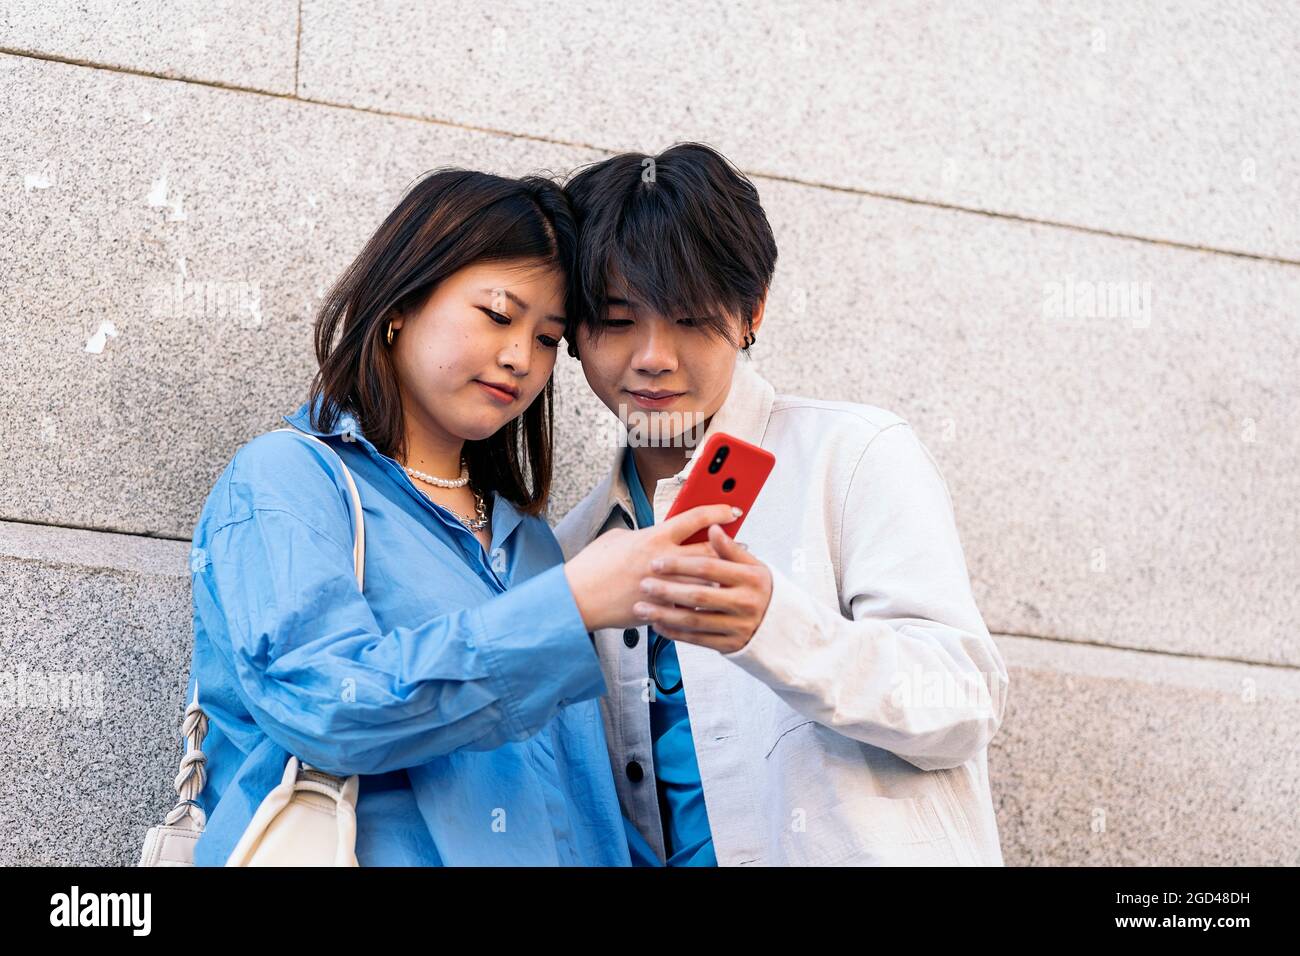 Cooles asiatisches Paar, das in der Stadt steht und auf ihr Telefon schaut. Stockfoto